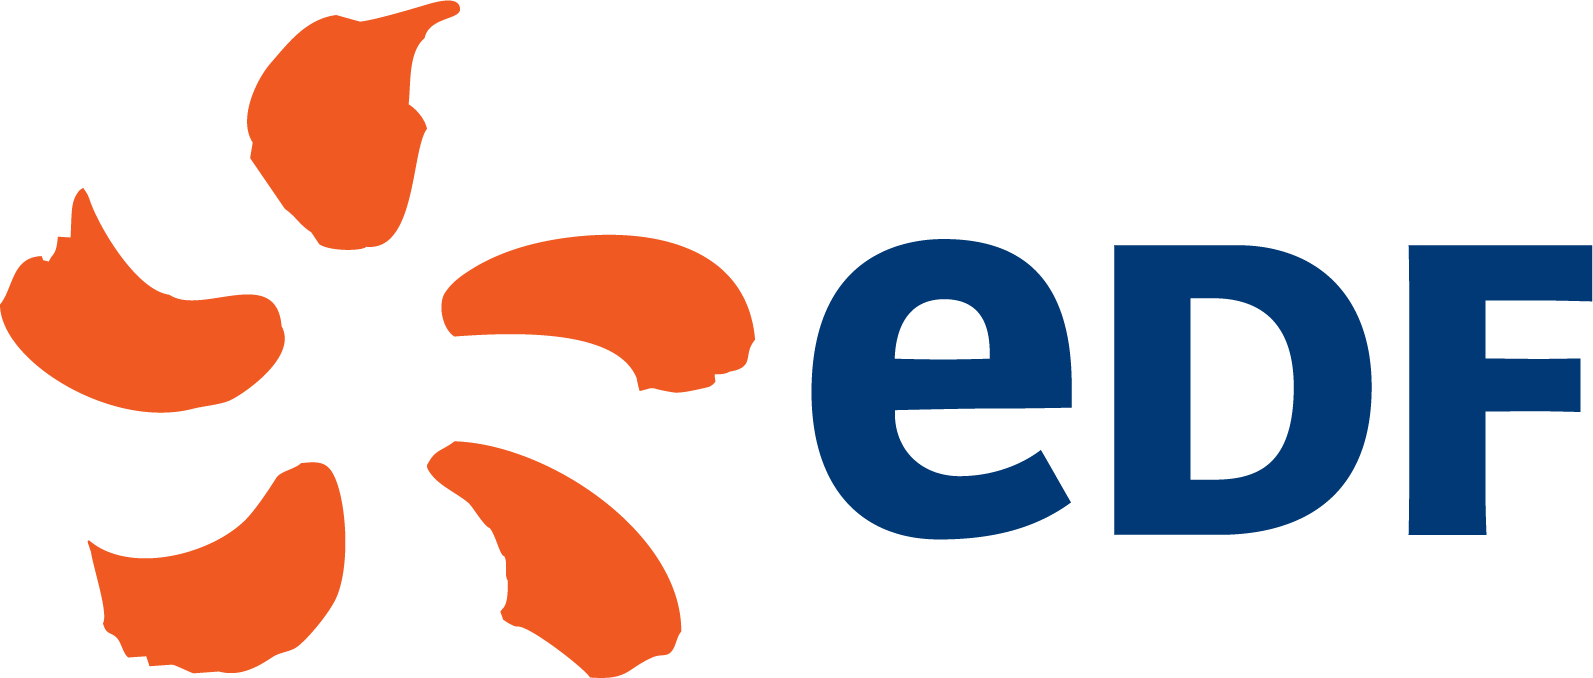 Logo-EDF